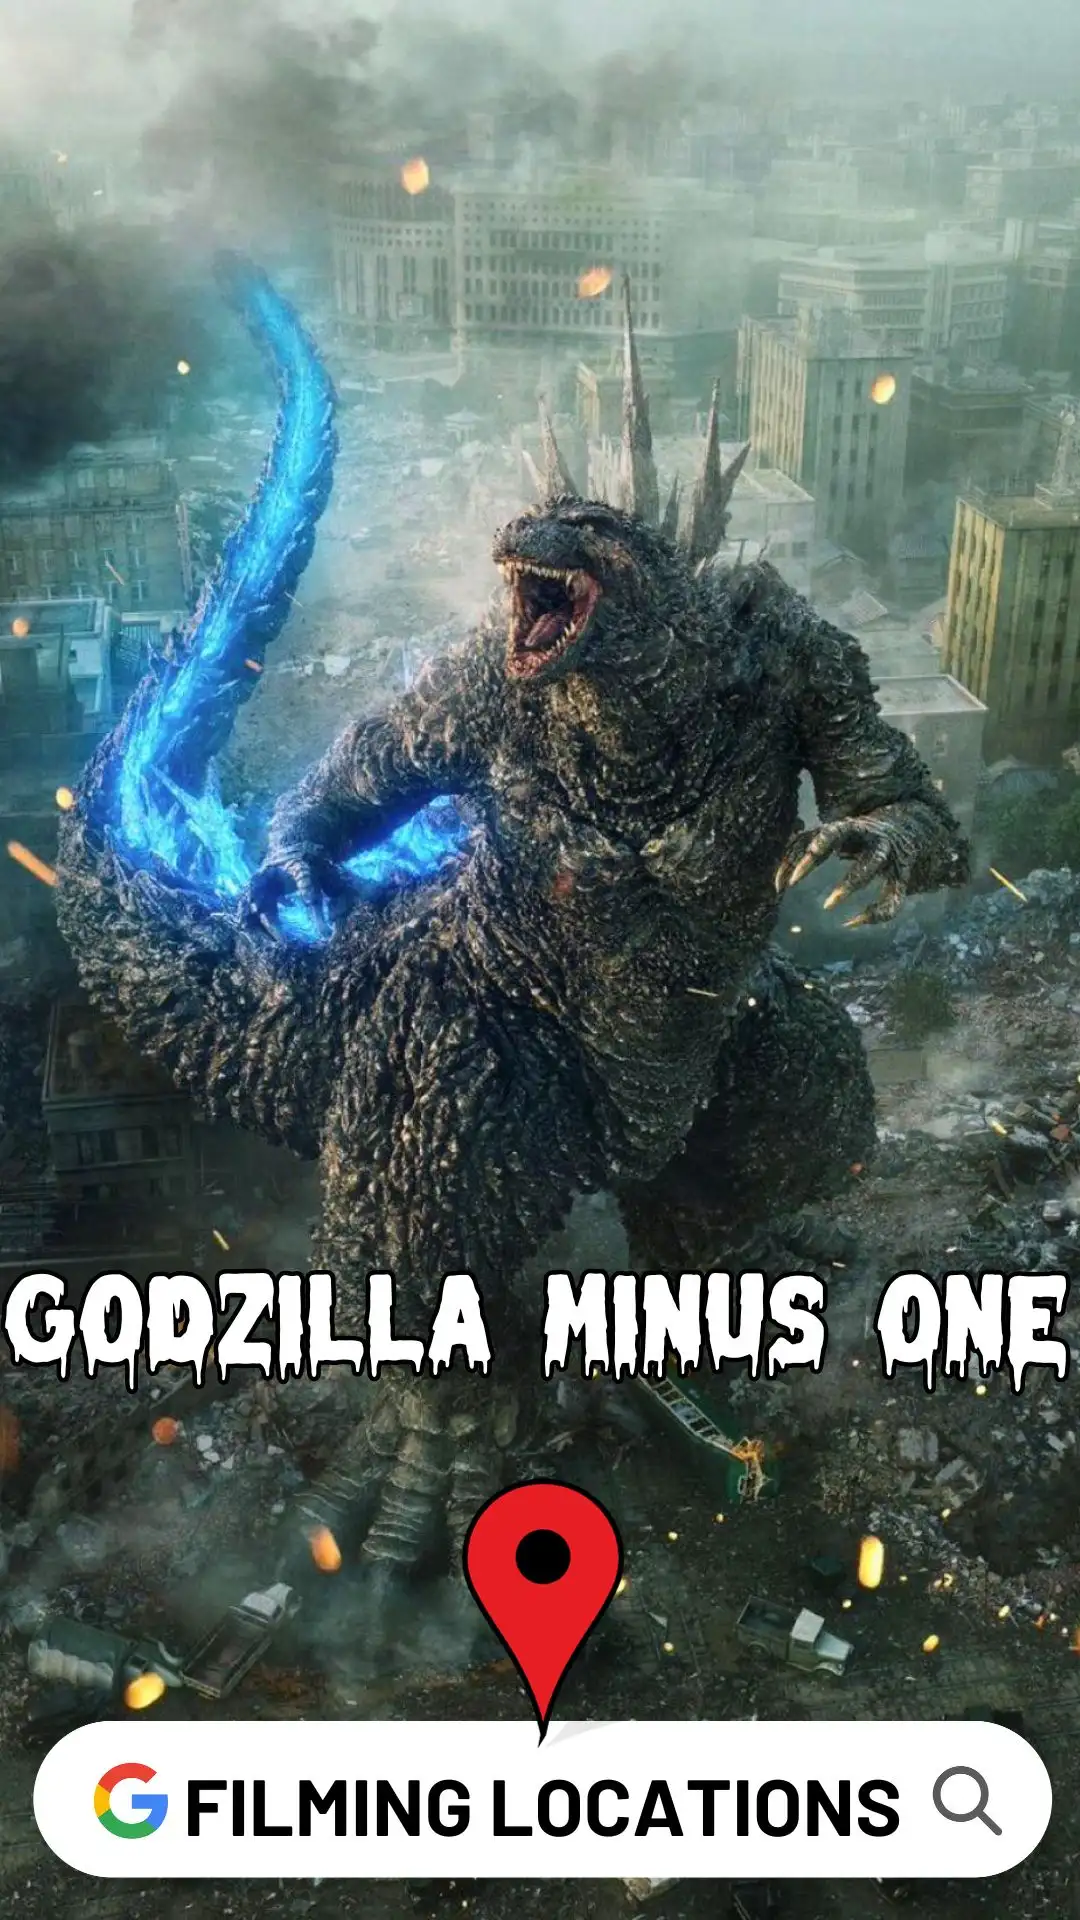 Godzilla Minus One Filming Locations